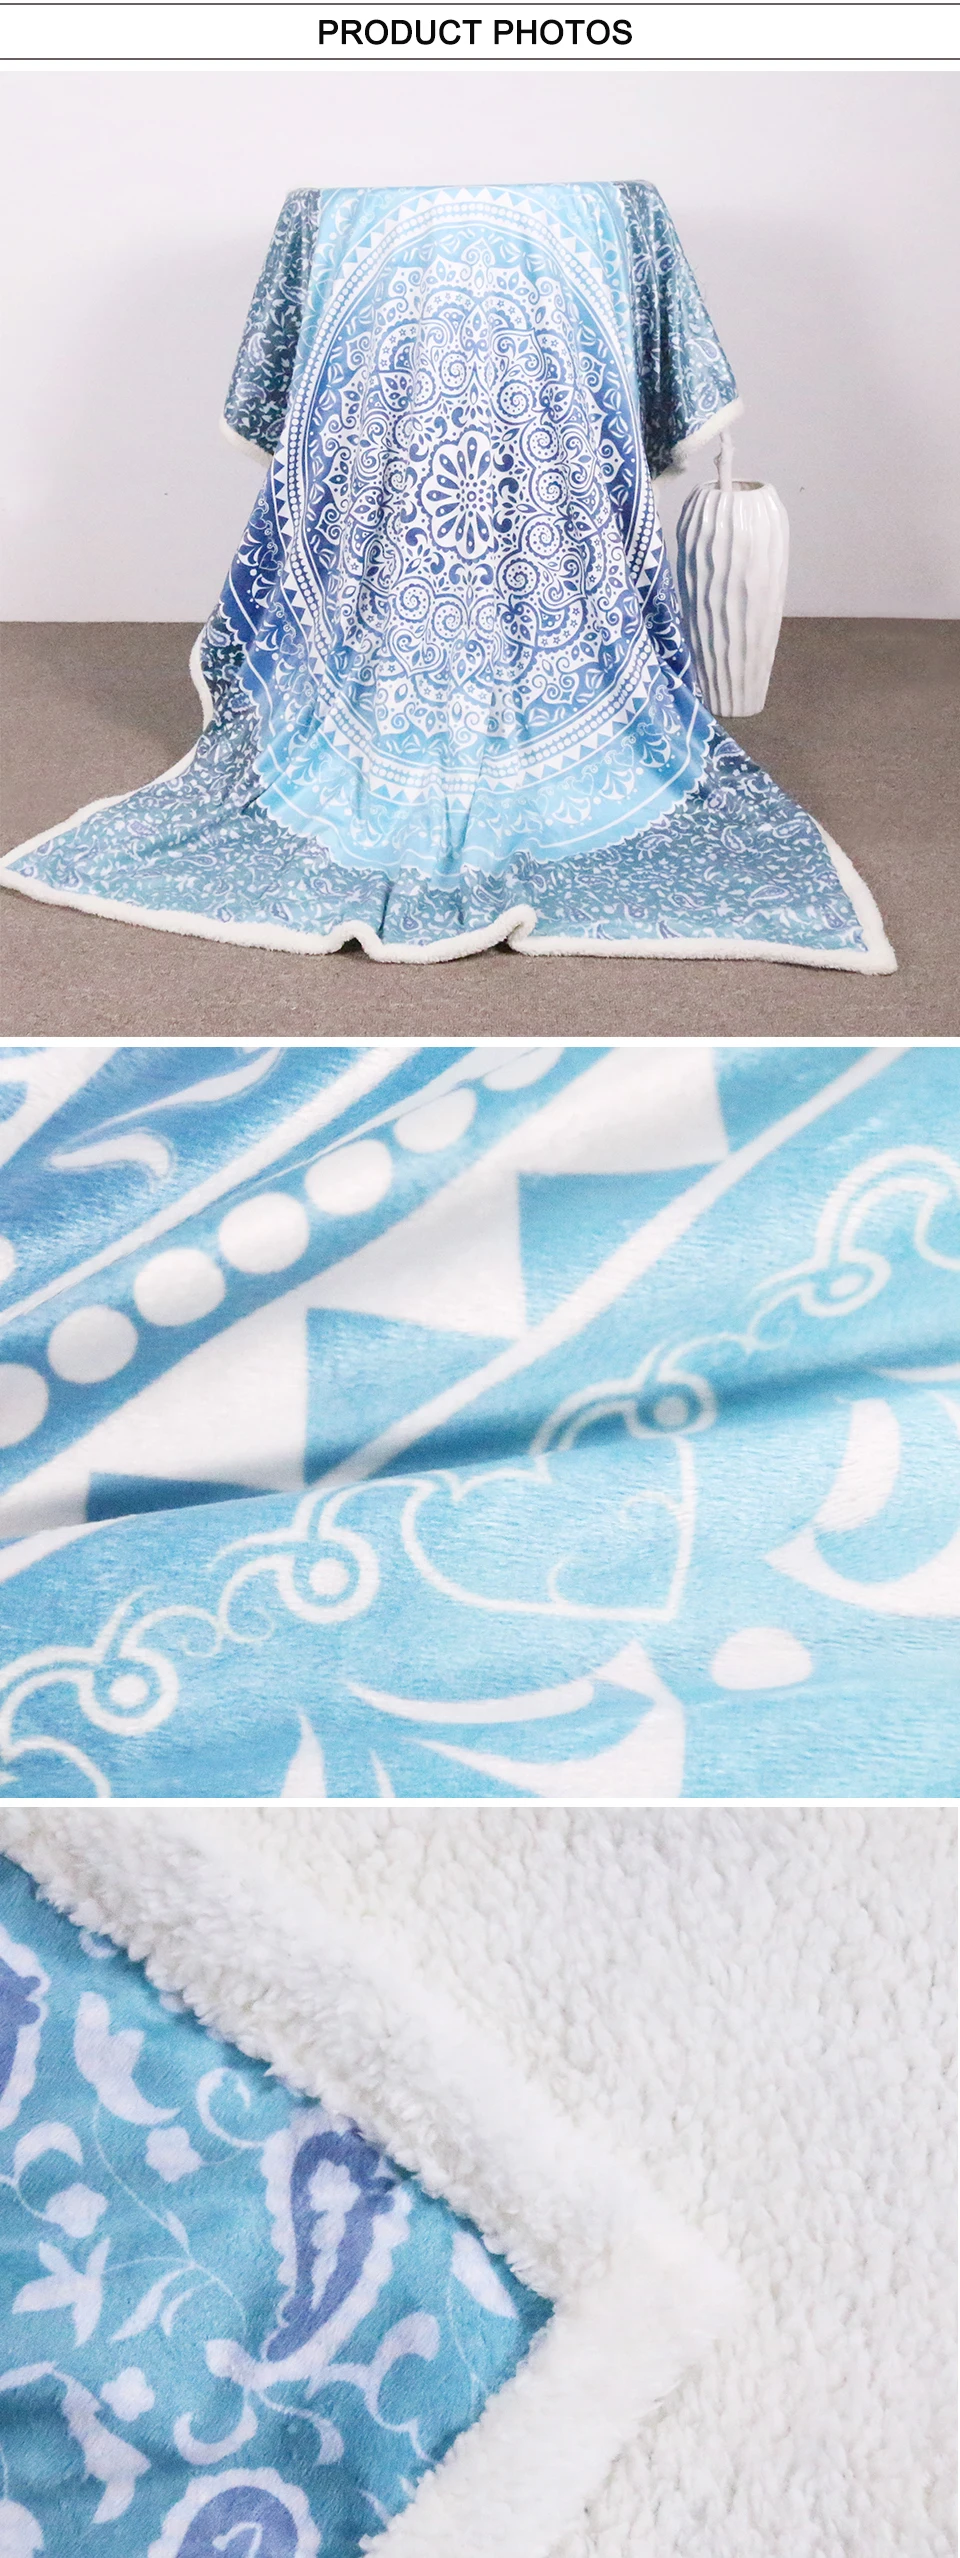 Постельные принадлежности Outlet шерпа пледы одеяло Бирюзовый Пейсли Мандала дизайн шерпа Флисовое одеяло супер мягкий уютный бархат плюшевое одеяло